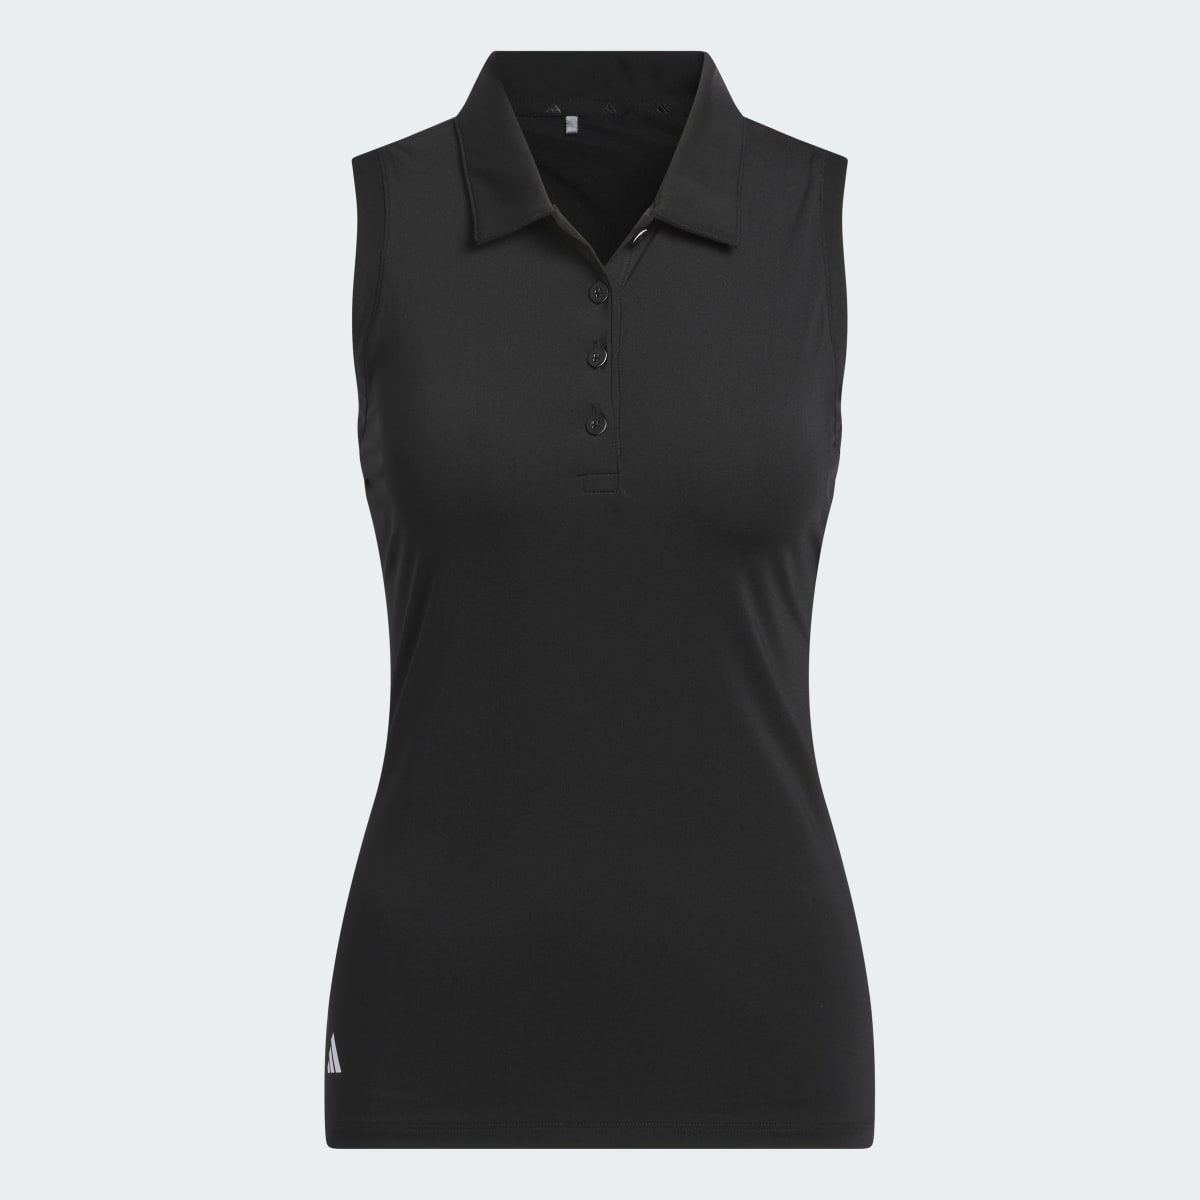 Adidas Koszulka Women's Ultimate365 Solid Sleeveless Polo. 5